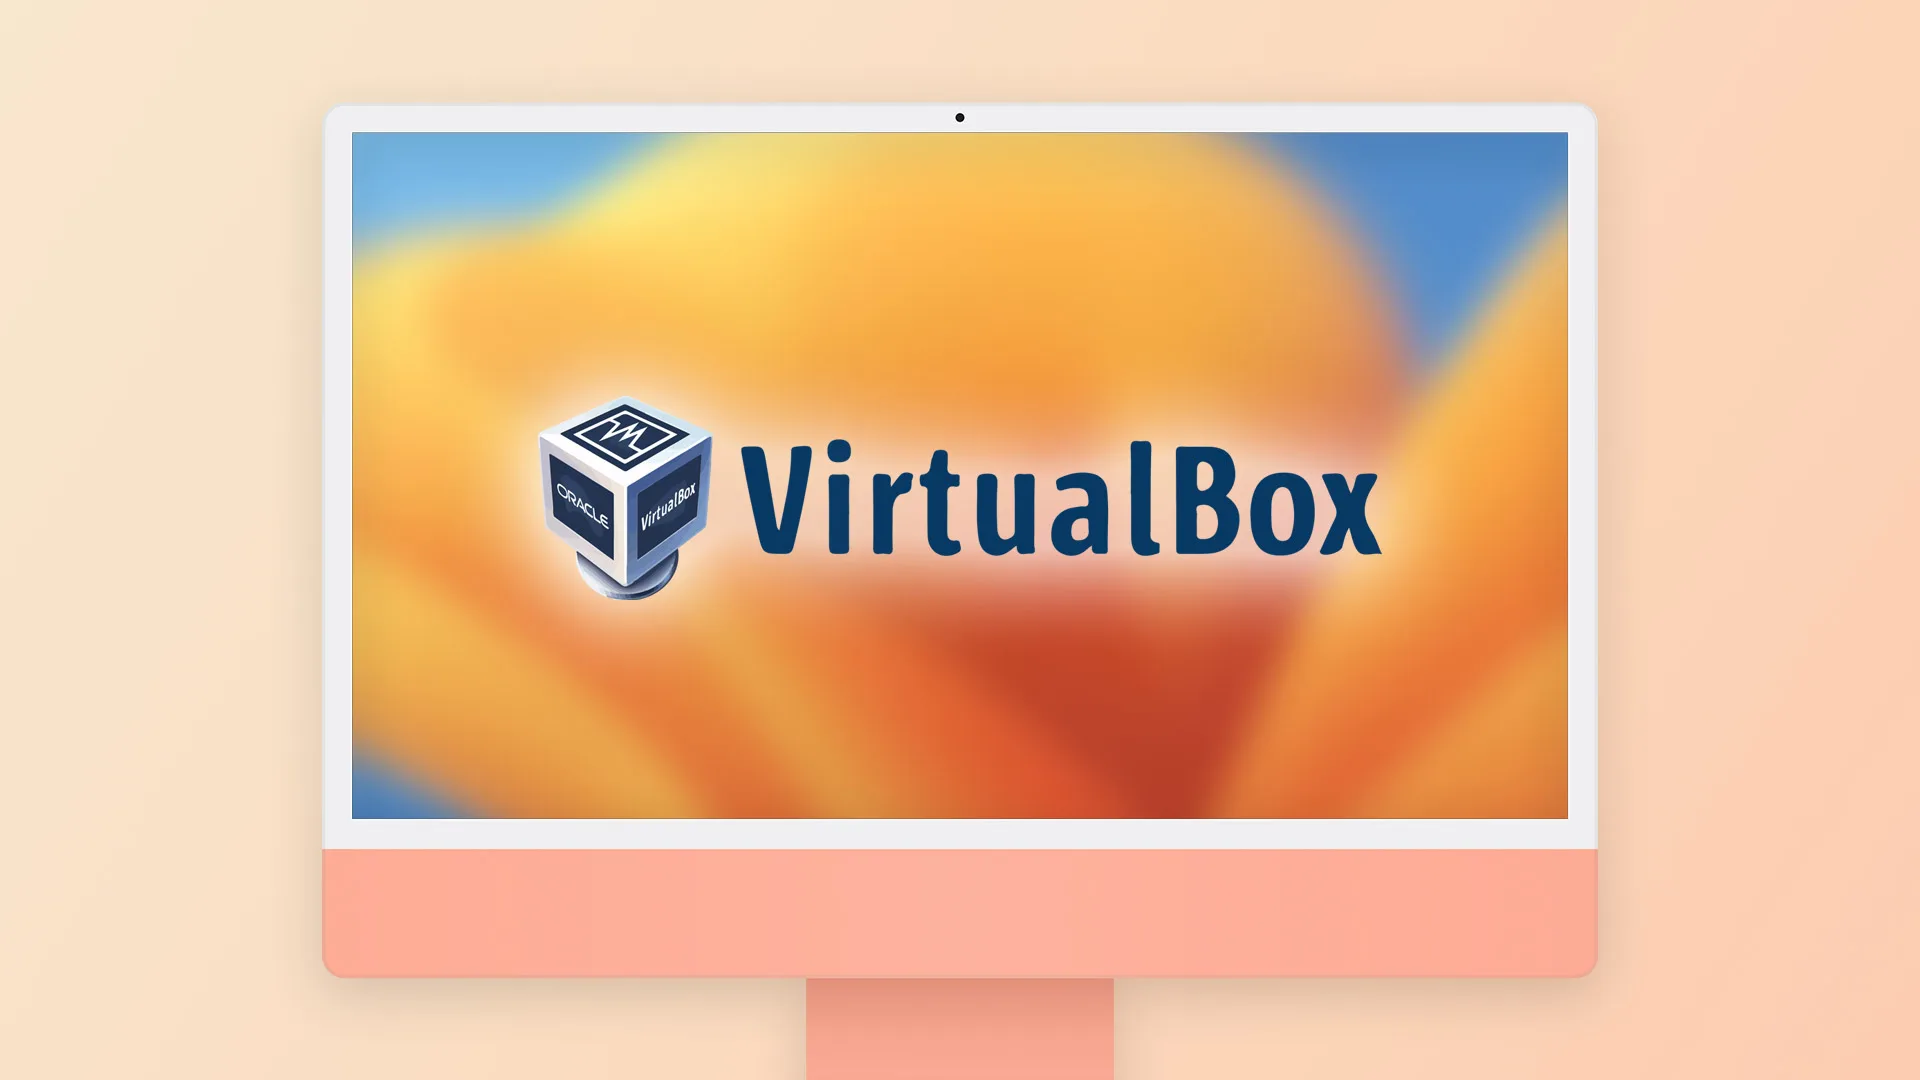 ¿Cómo salir de la pantalla completa en VirtualBox? - 21 - diciembre 8, 2022